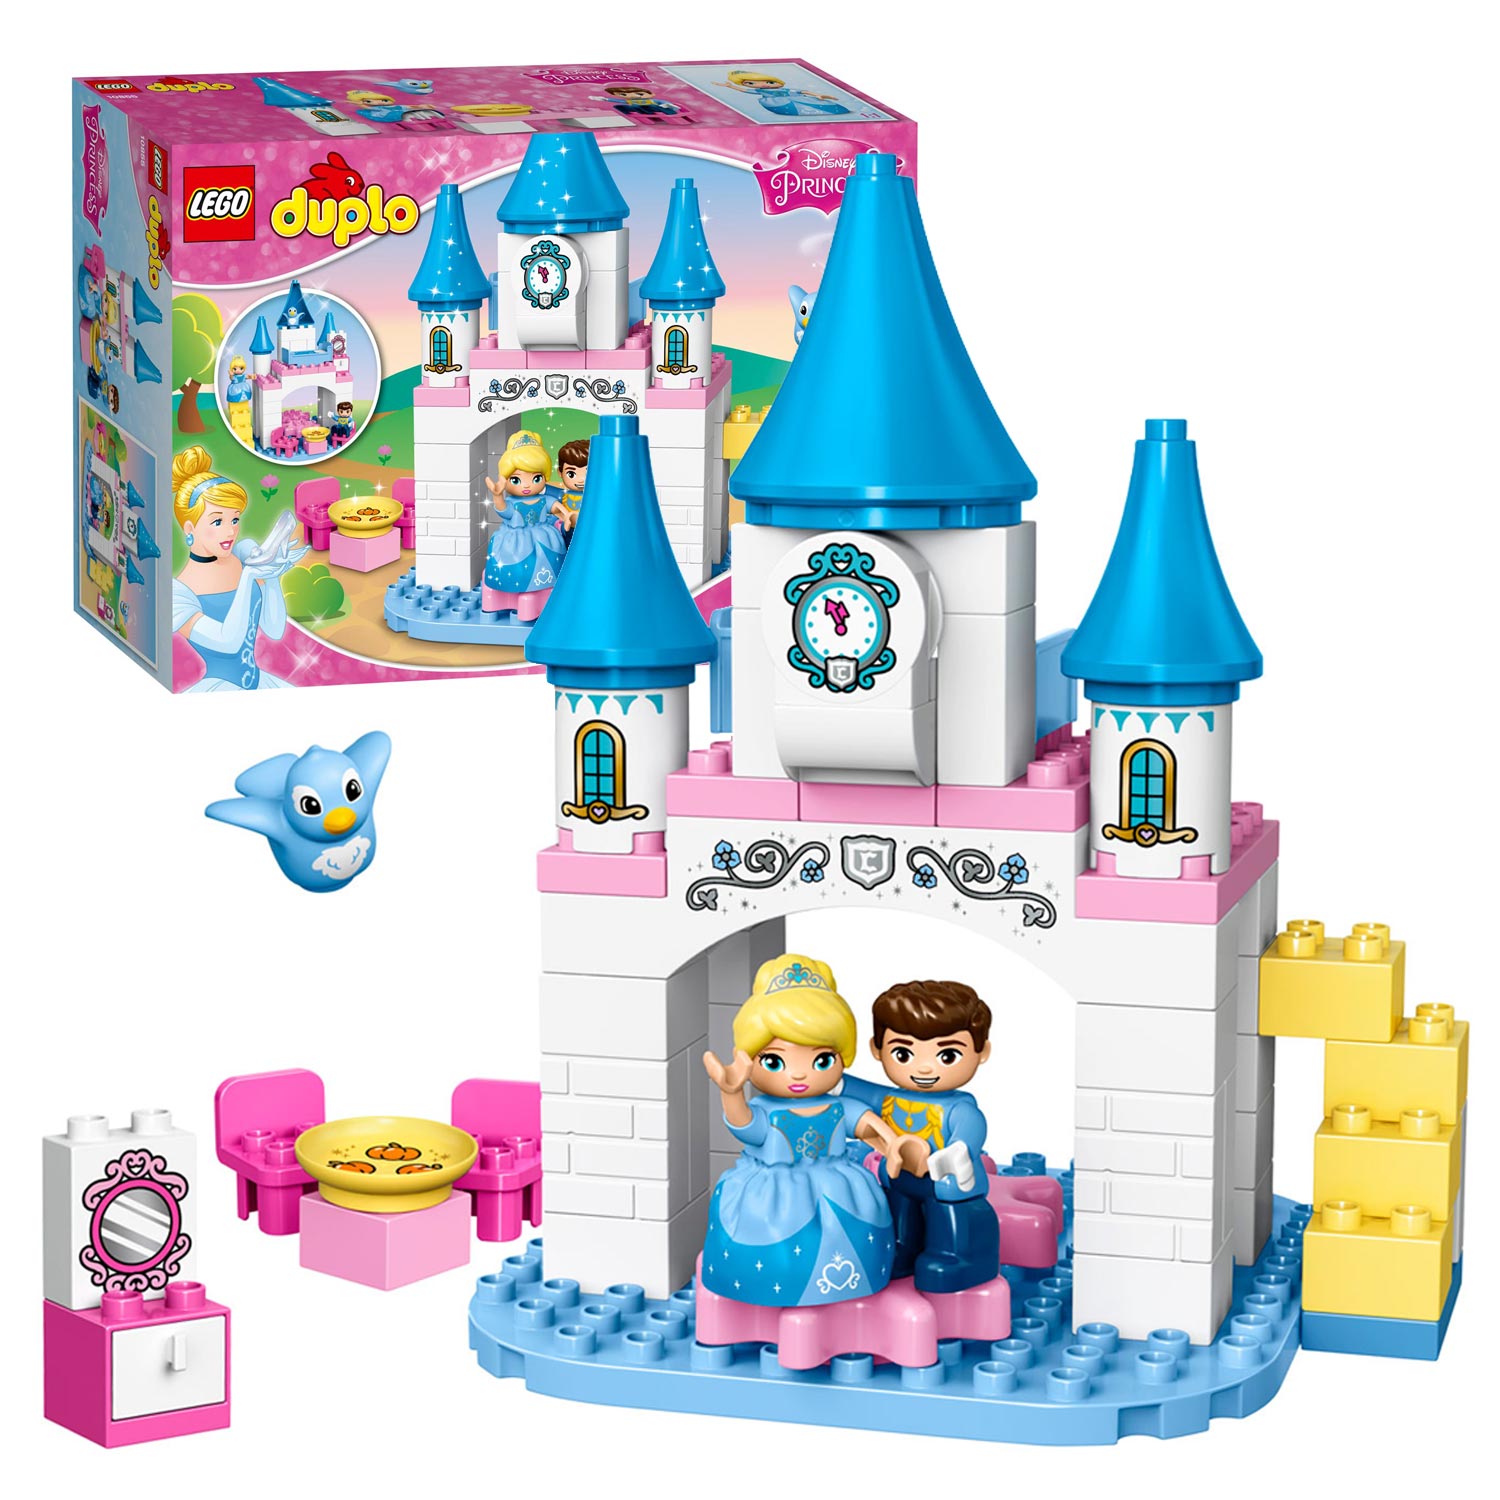 LEGO DUPLO Prinses 10855 Assepoesters Magische Kasteel